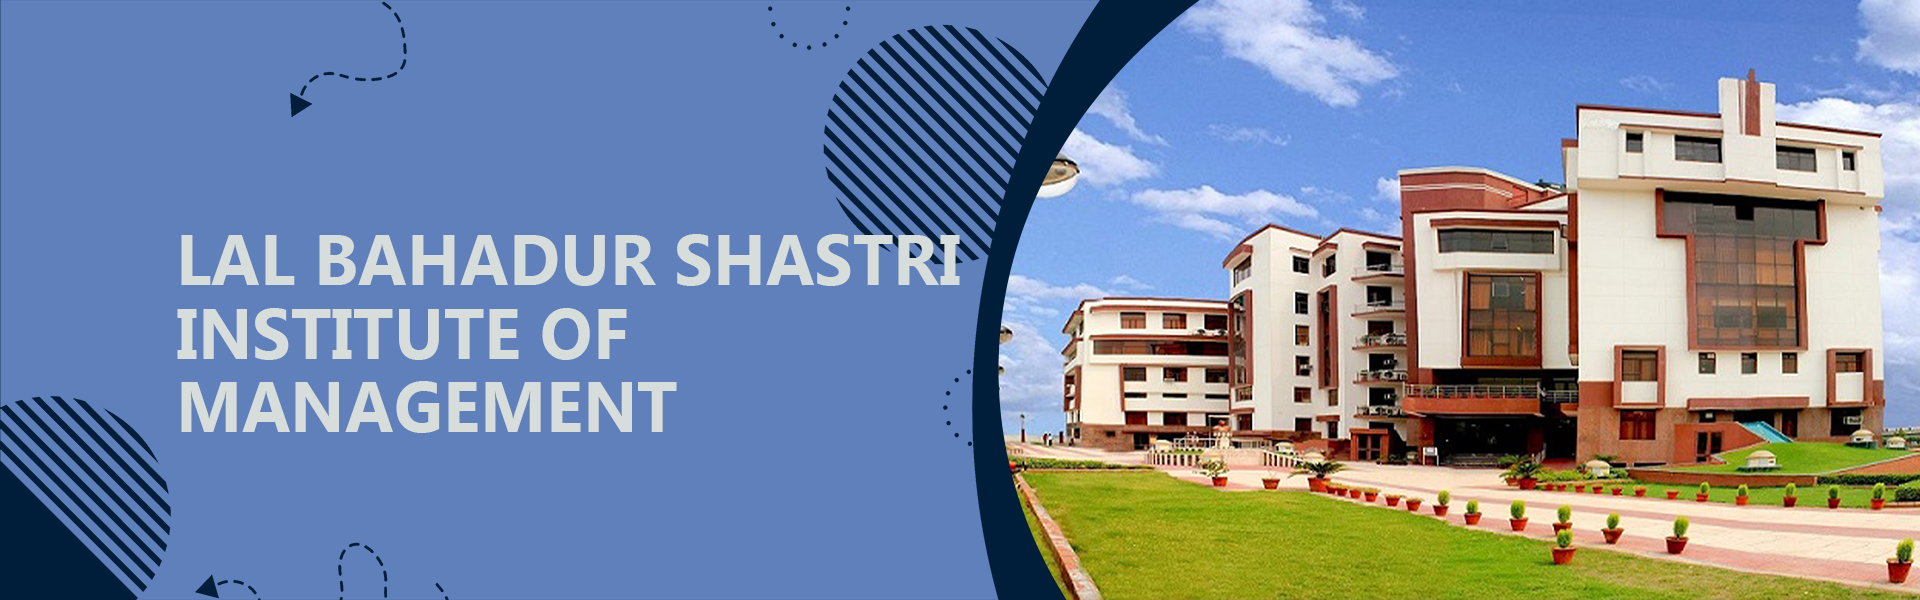 Lal Bahadur Shastri Institute of Management New Delhi